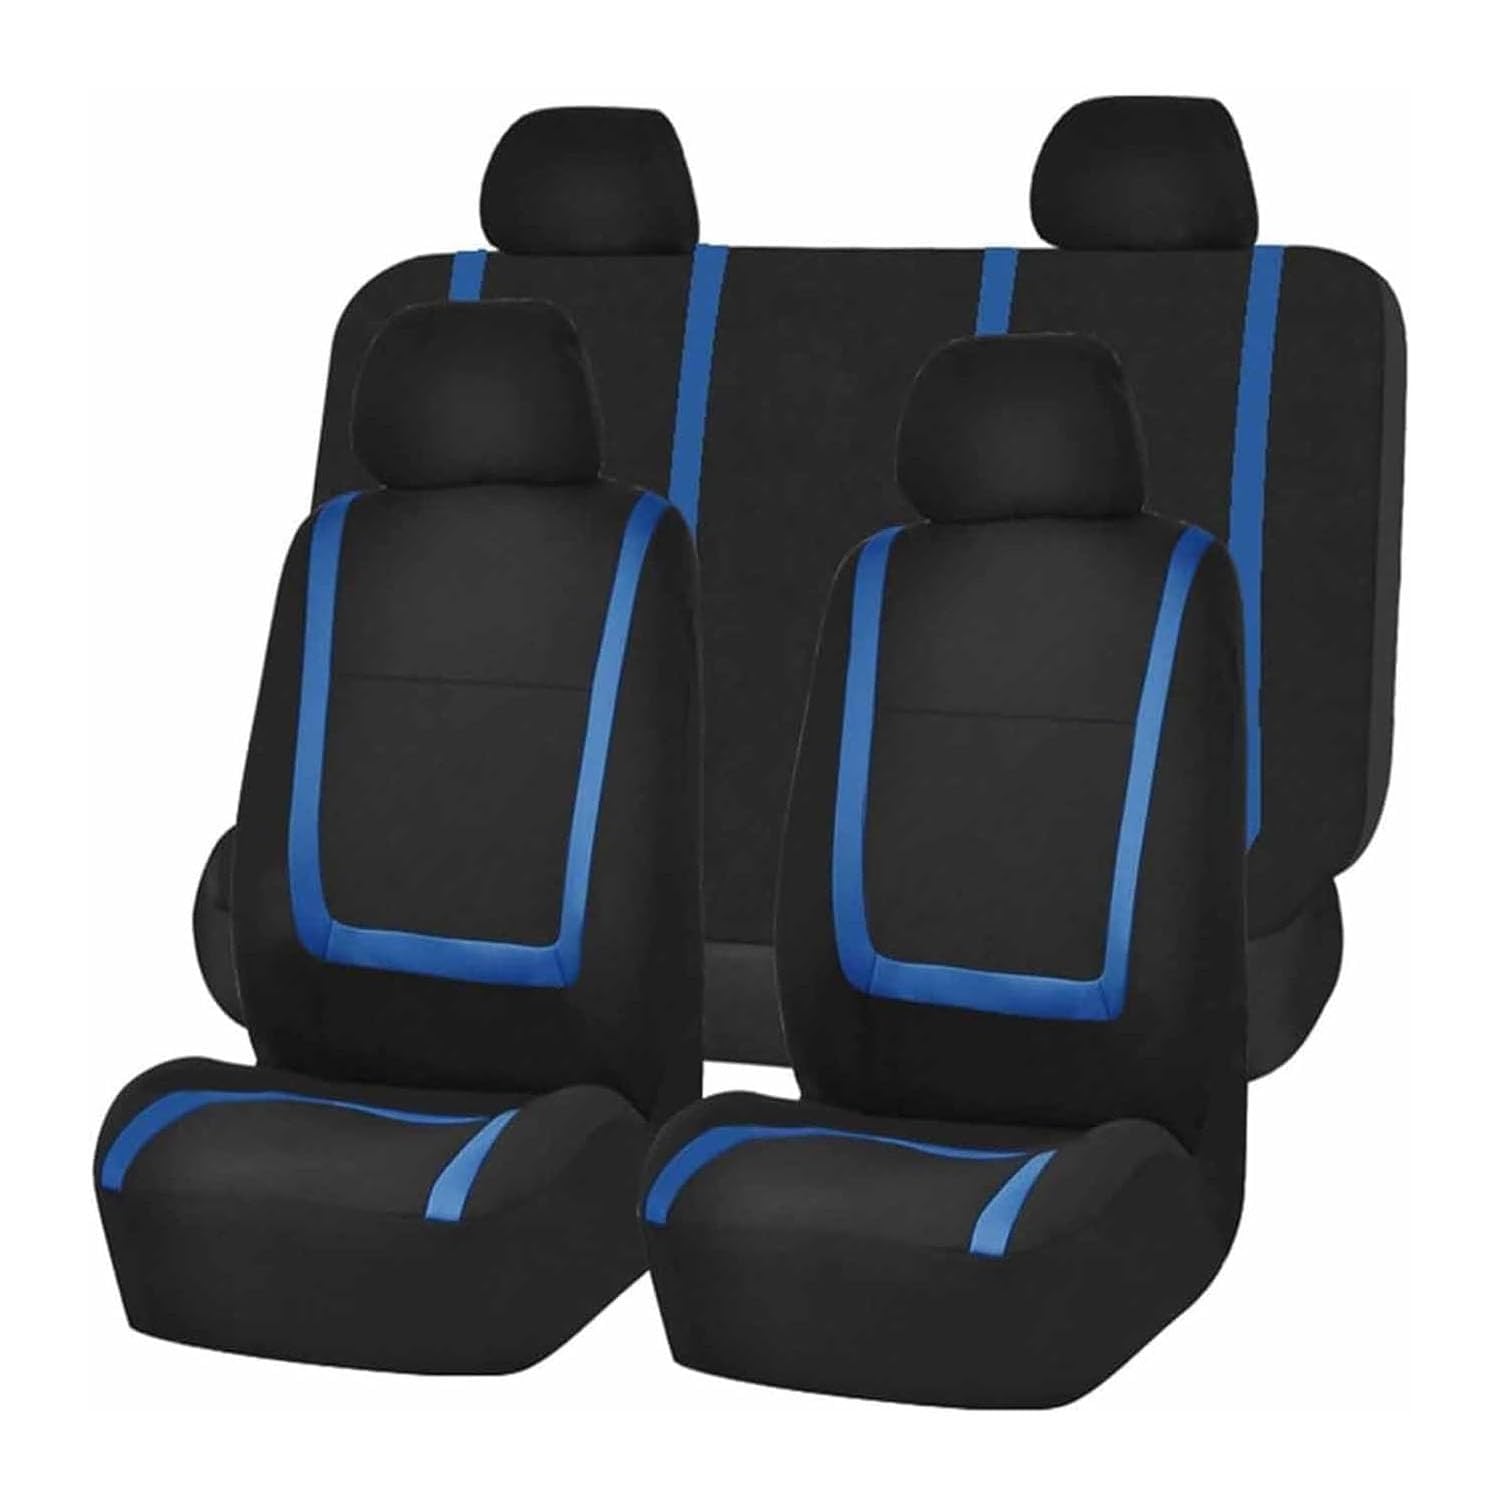 VewZJJ Auto Sitzbezügesets für Hyundai Sonata,Komfortabler Atmungsaktiv Sitzschoner Satz Sitzbezug,rutschfest Wasserdichter Vorne RüCkbank Autositz SitzbezüGe,Black-Blue von VewZJJ